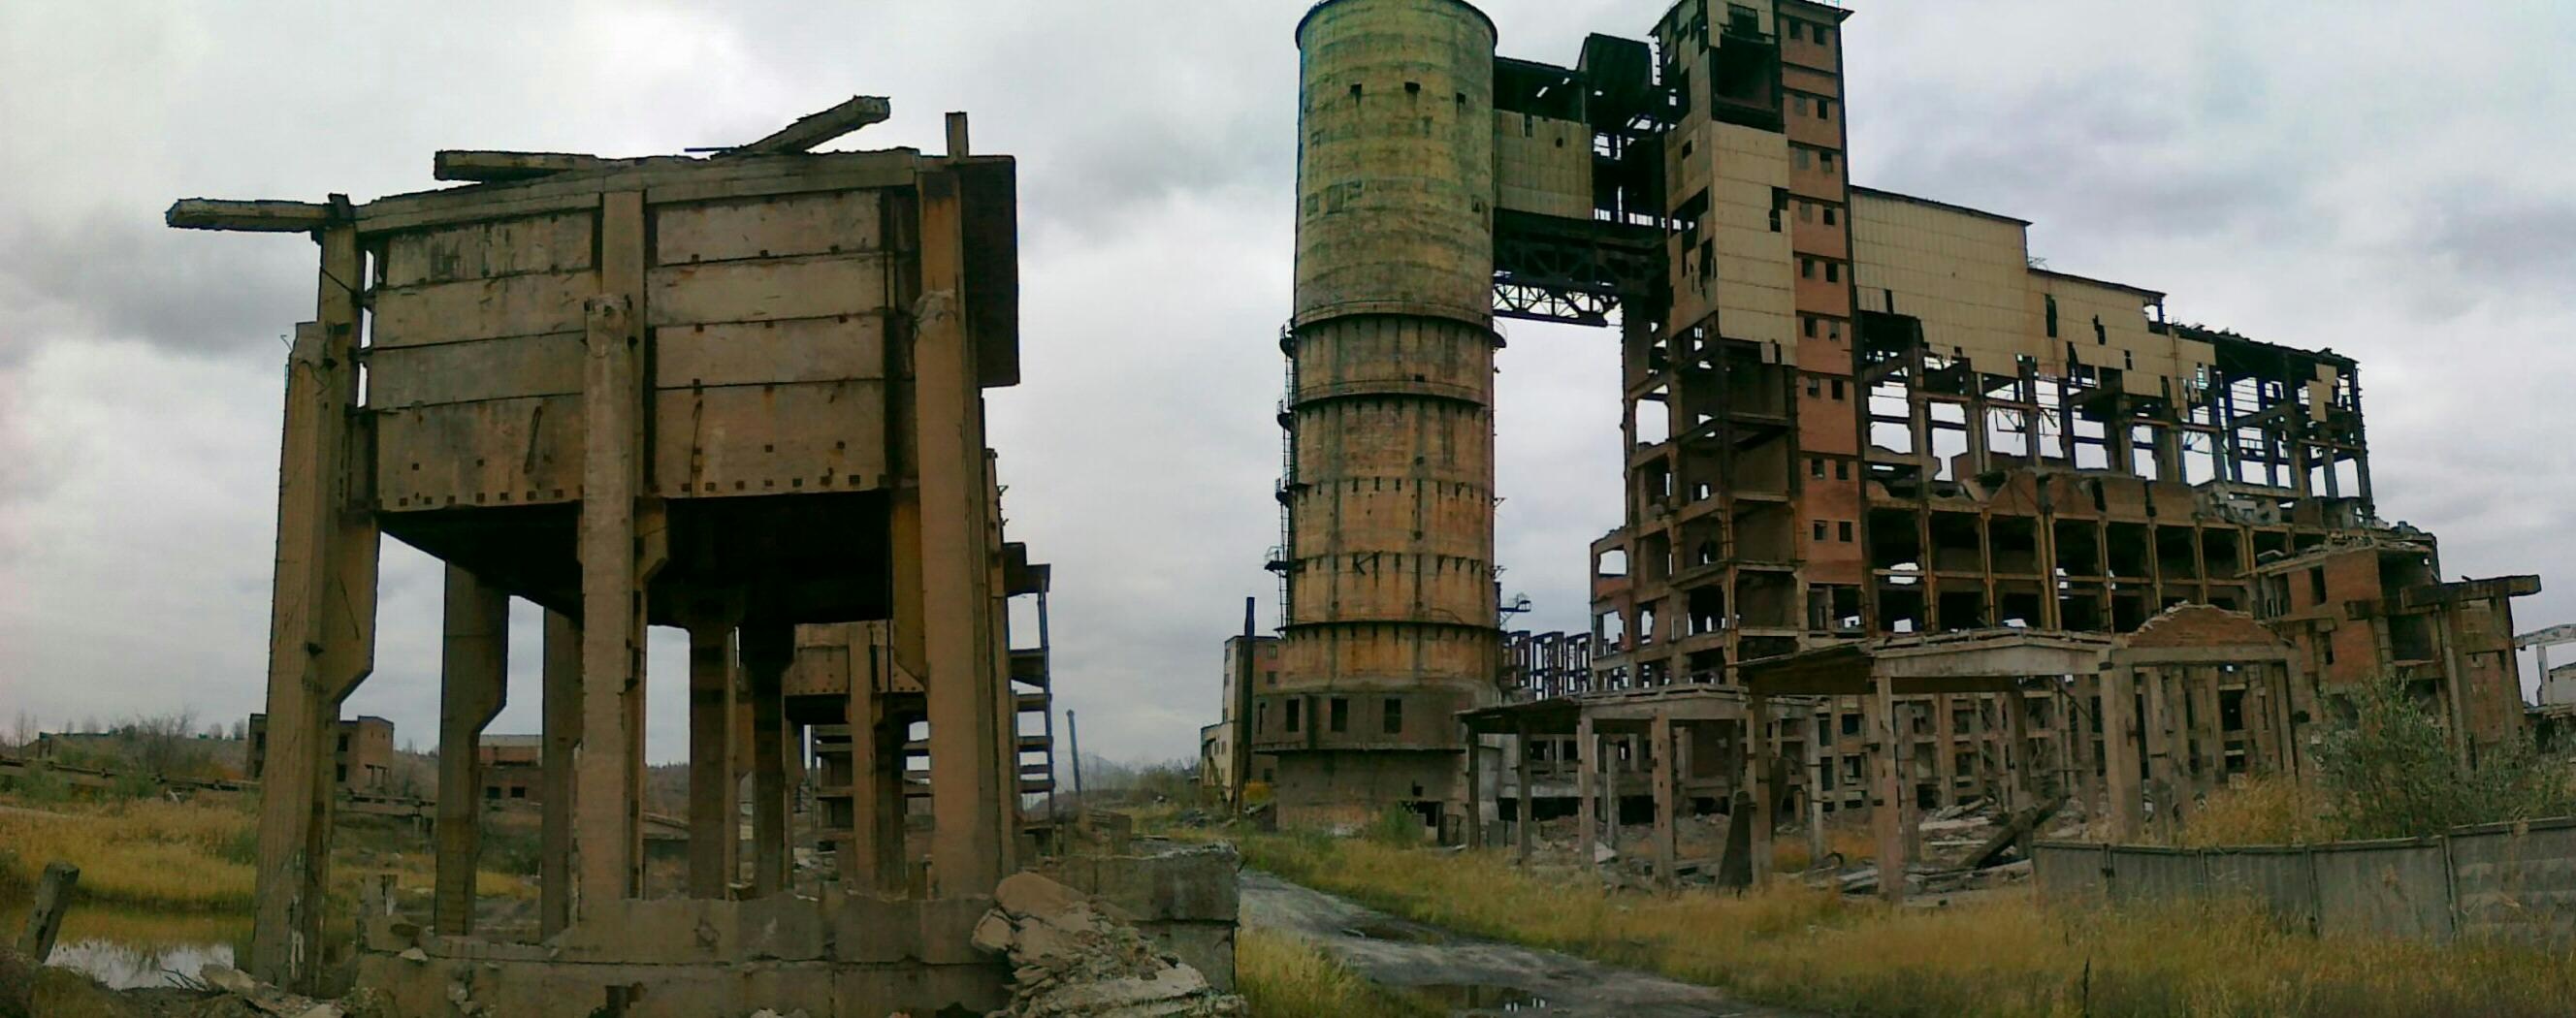 Разрушенная промышленность. Заводы Украины разрушенные. Украина фабрики разваленные. Украина завод Химпром. Разрушенные промышленные здания.